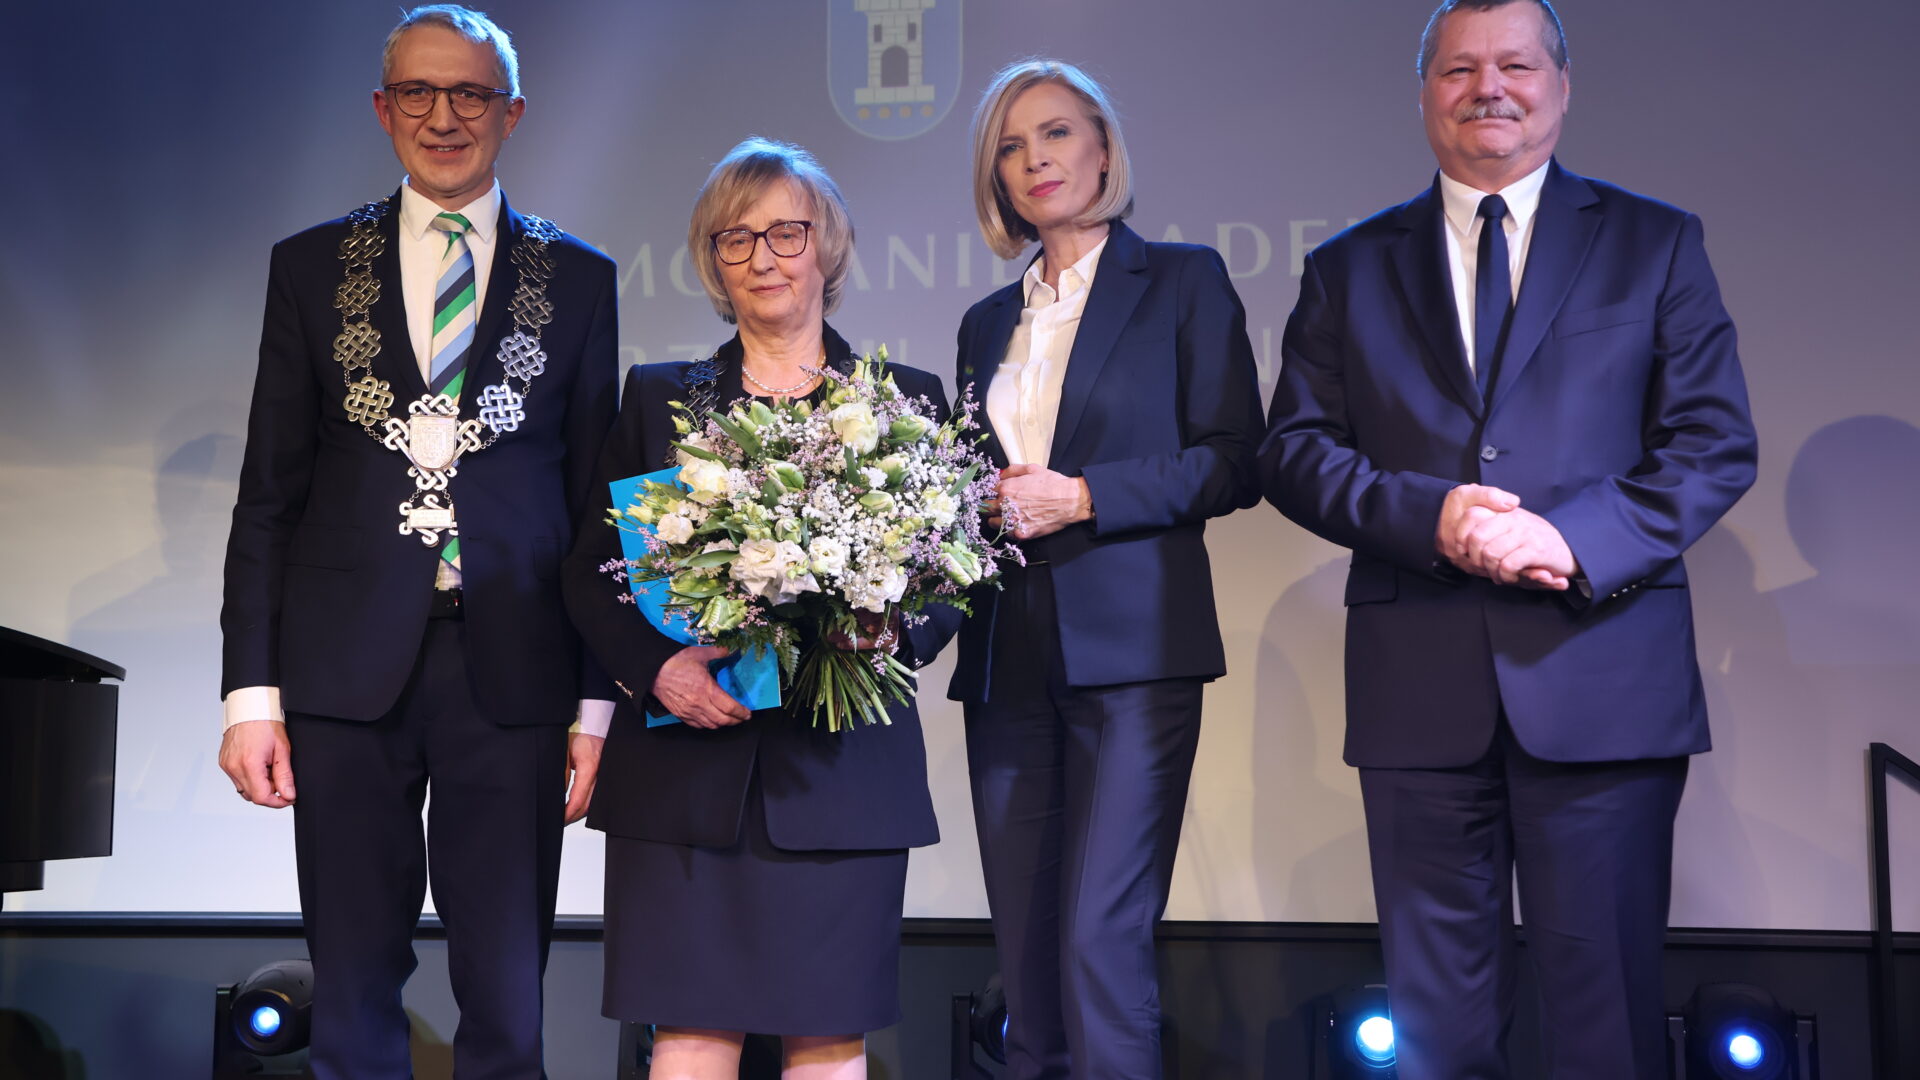 Burmistrz MiG Pleszew oraz zastępcy i Przewodnicząca RM w Pleszewie wręczający podziękowania dla sołtysów i przewodniczących